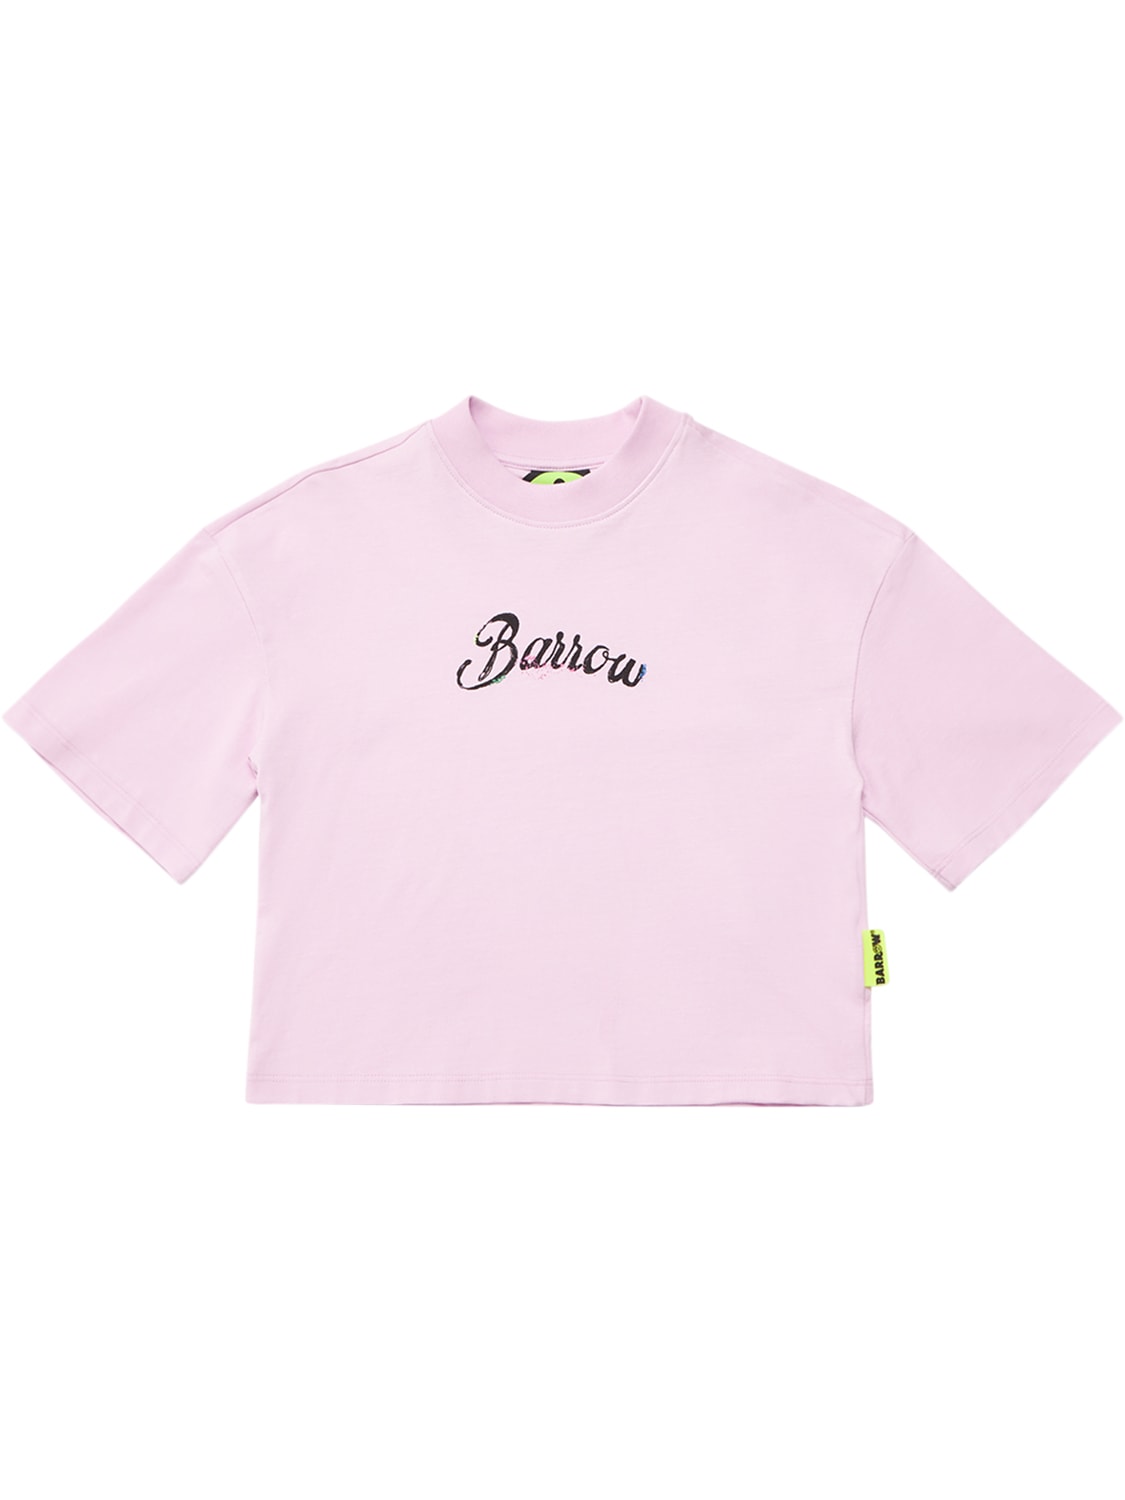 Barrow Kids' 印花棉质平纹针织短款t恤 In Pink